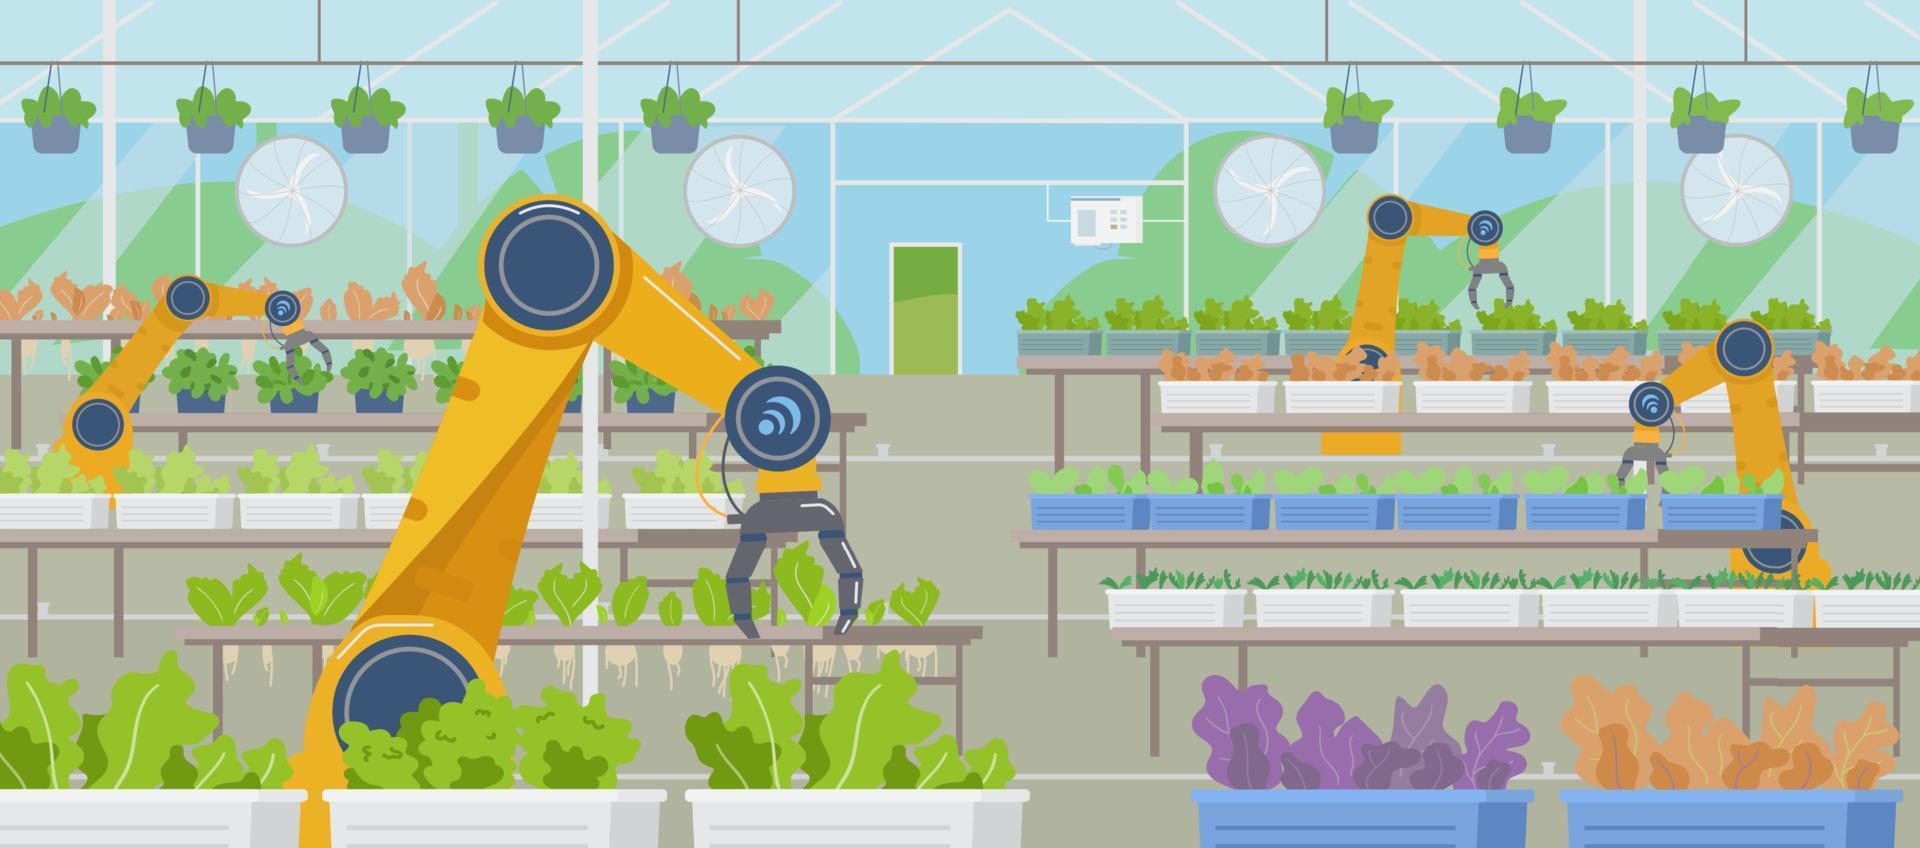 estufa com robôs automatizados de agricultura trabalhando fundo horizontal vector plana. agricultura inteligente.